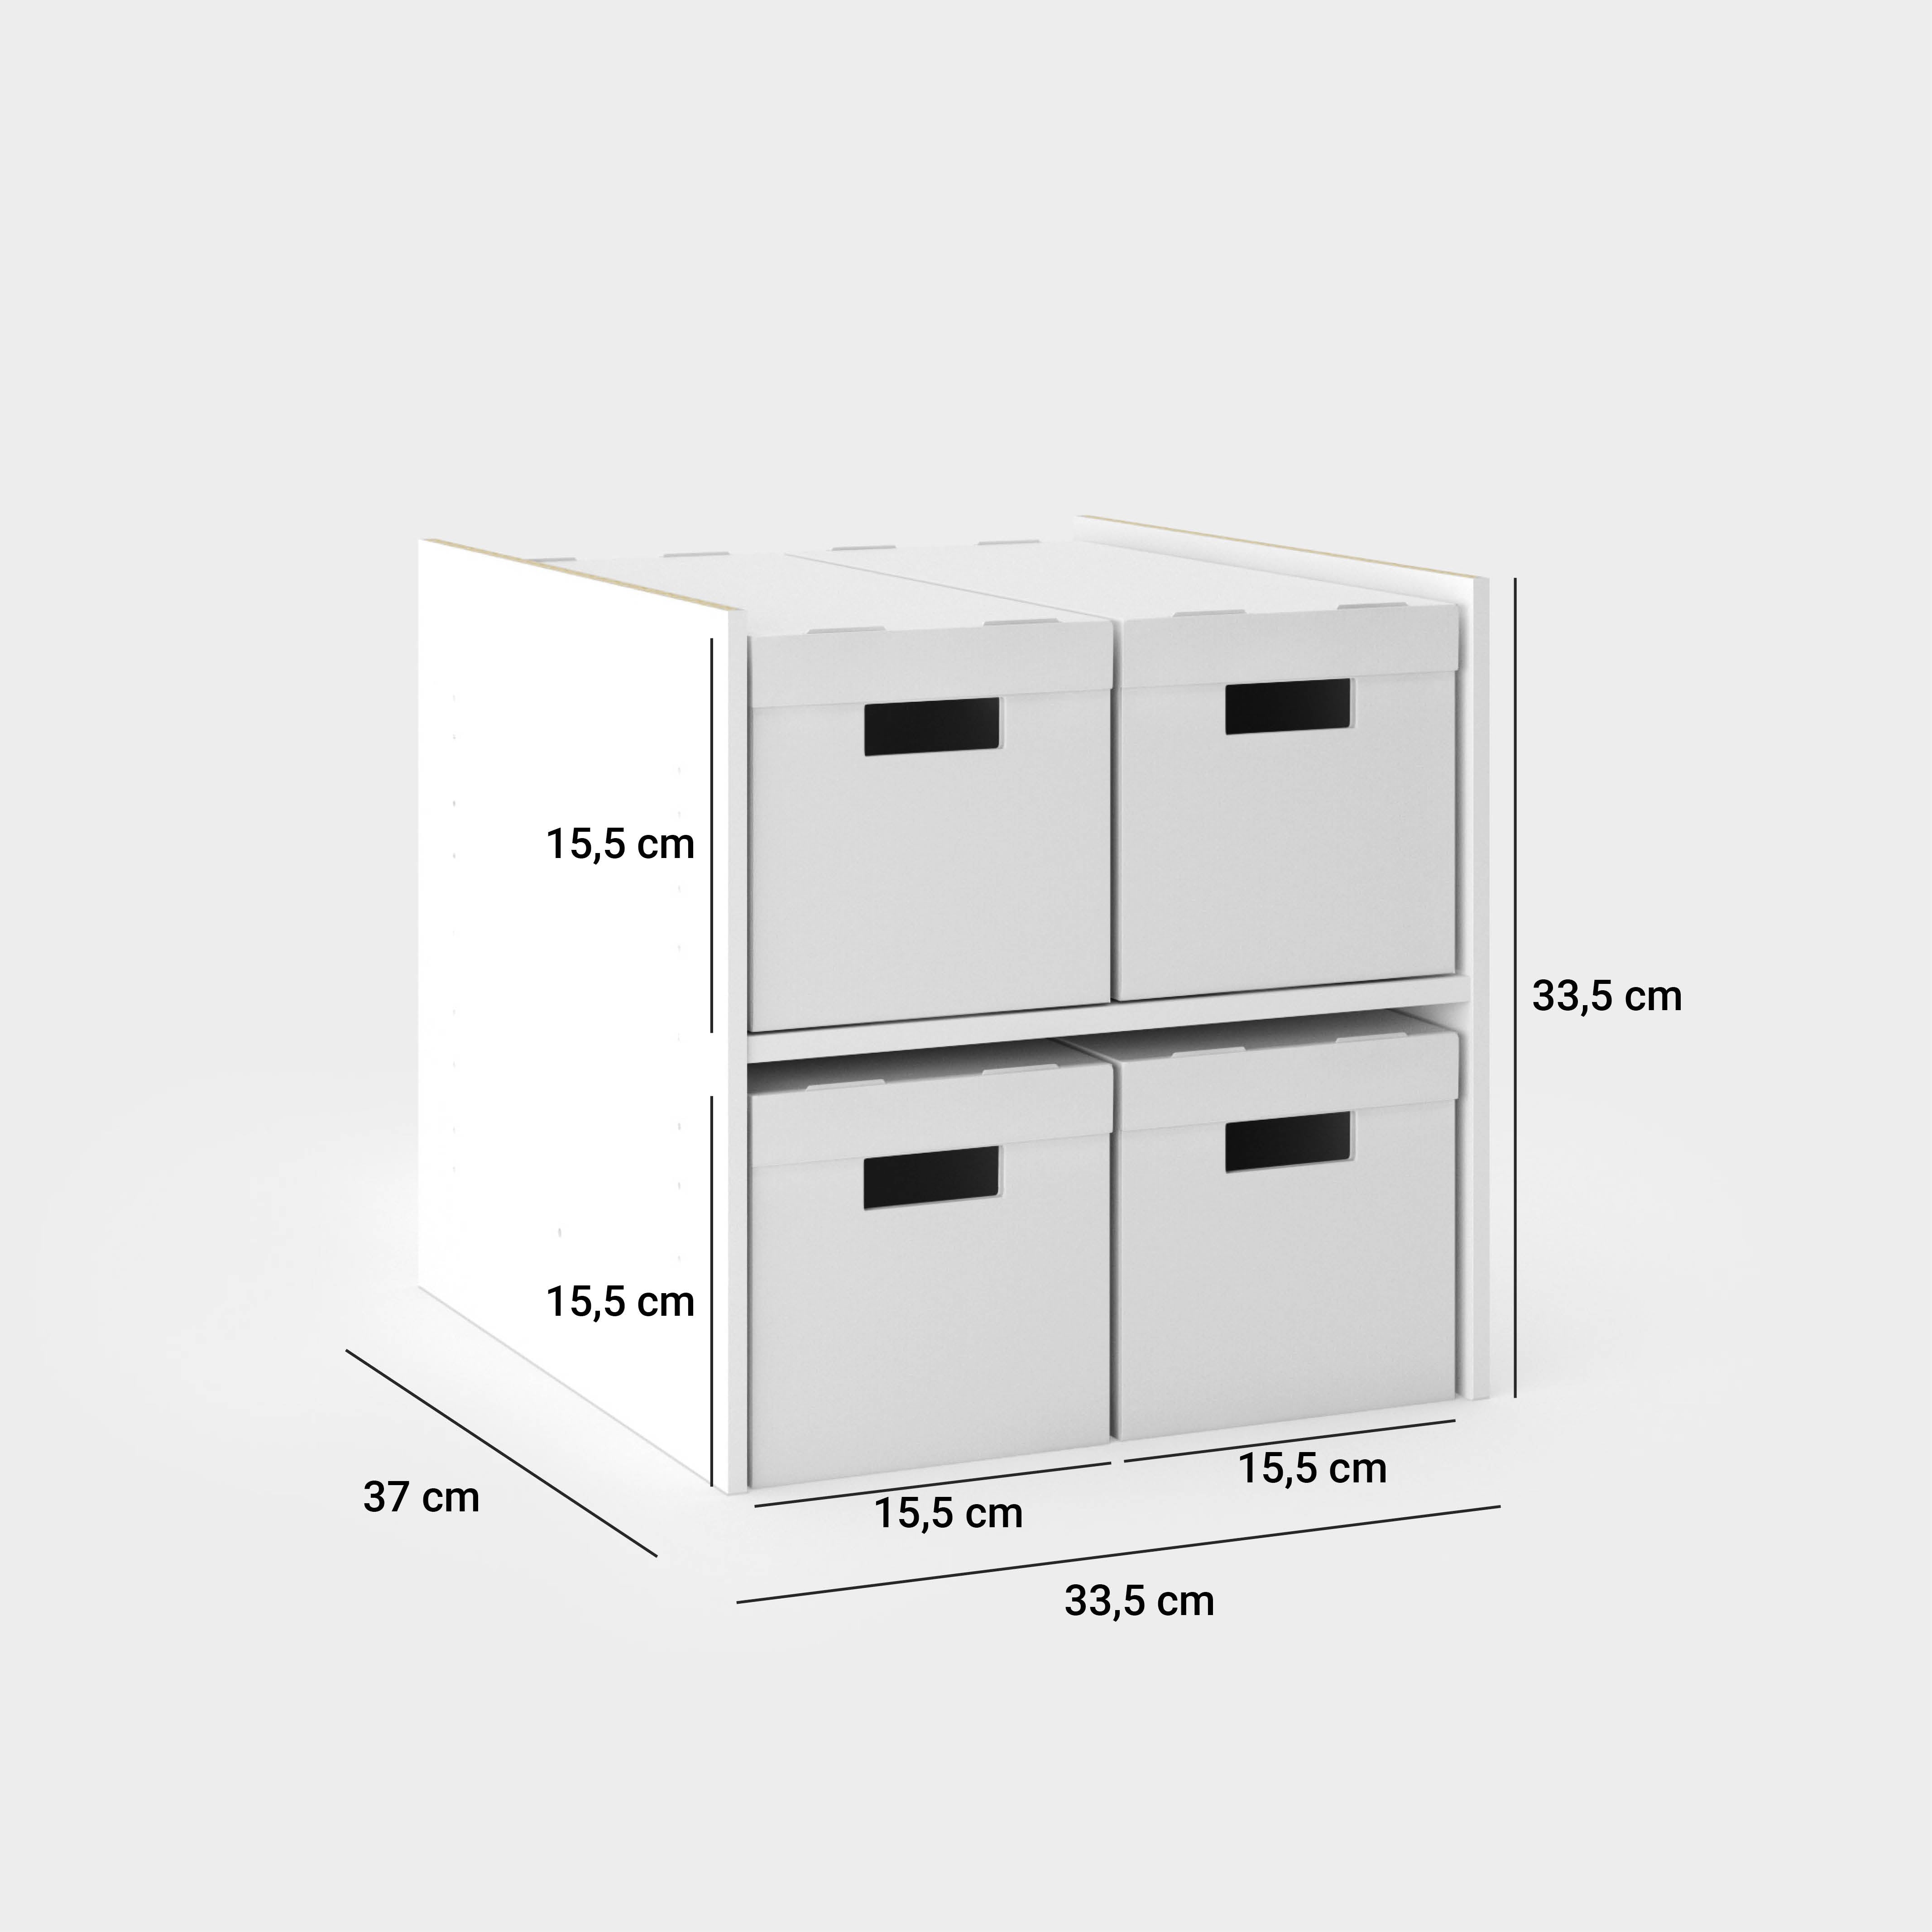 IKEA Regaleinsatz Maße: insgesamt 33,5 cm breit, 33,5 cm hoch und 37 cm tief